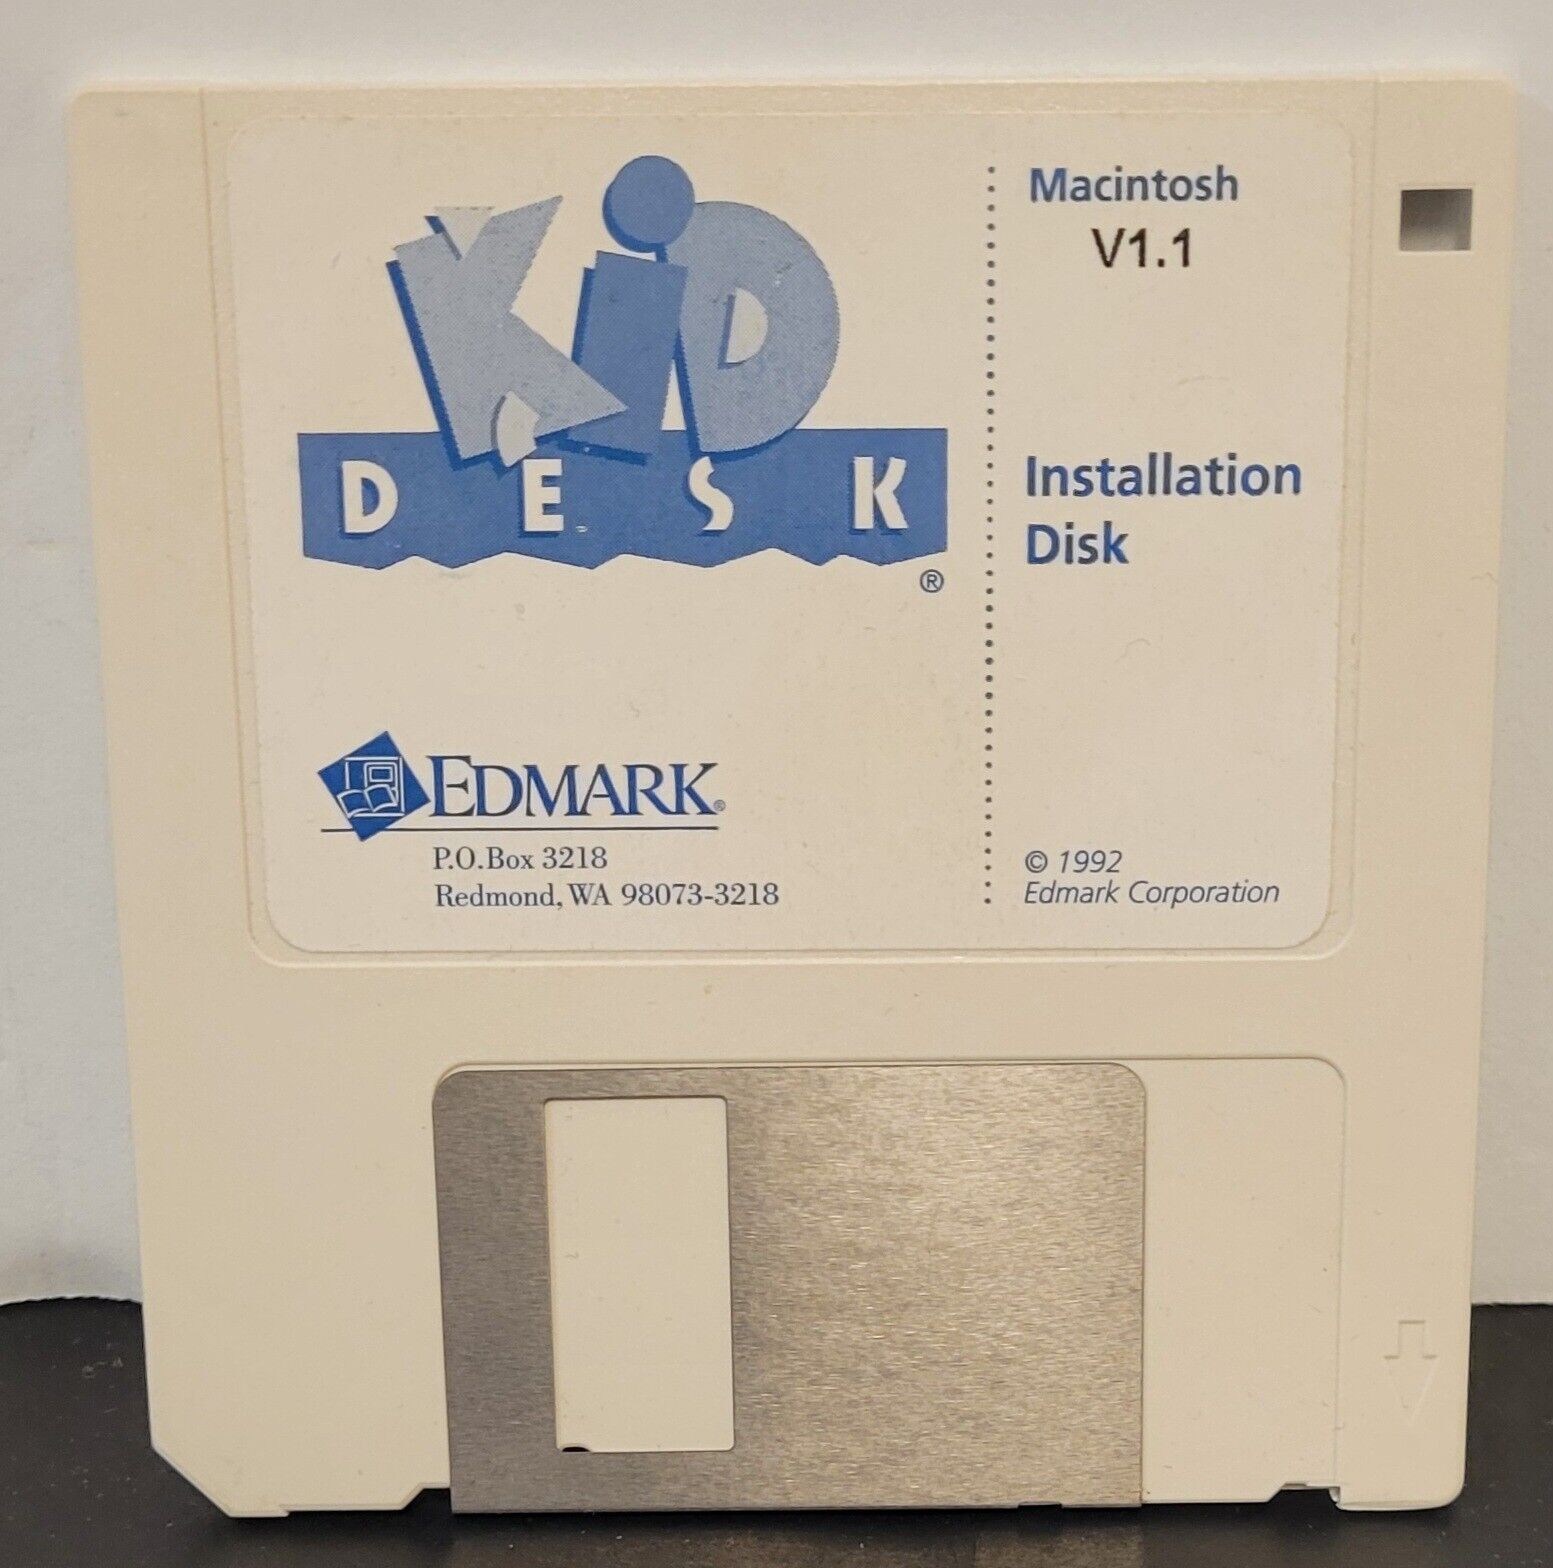 Vintage 1992 Kid Desk Macintosh V1.1 Installation Disk Edmark Corporation